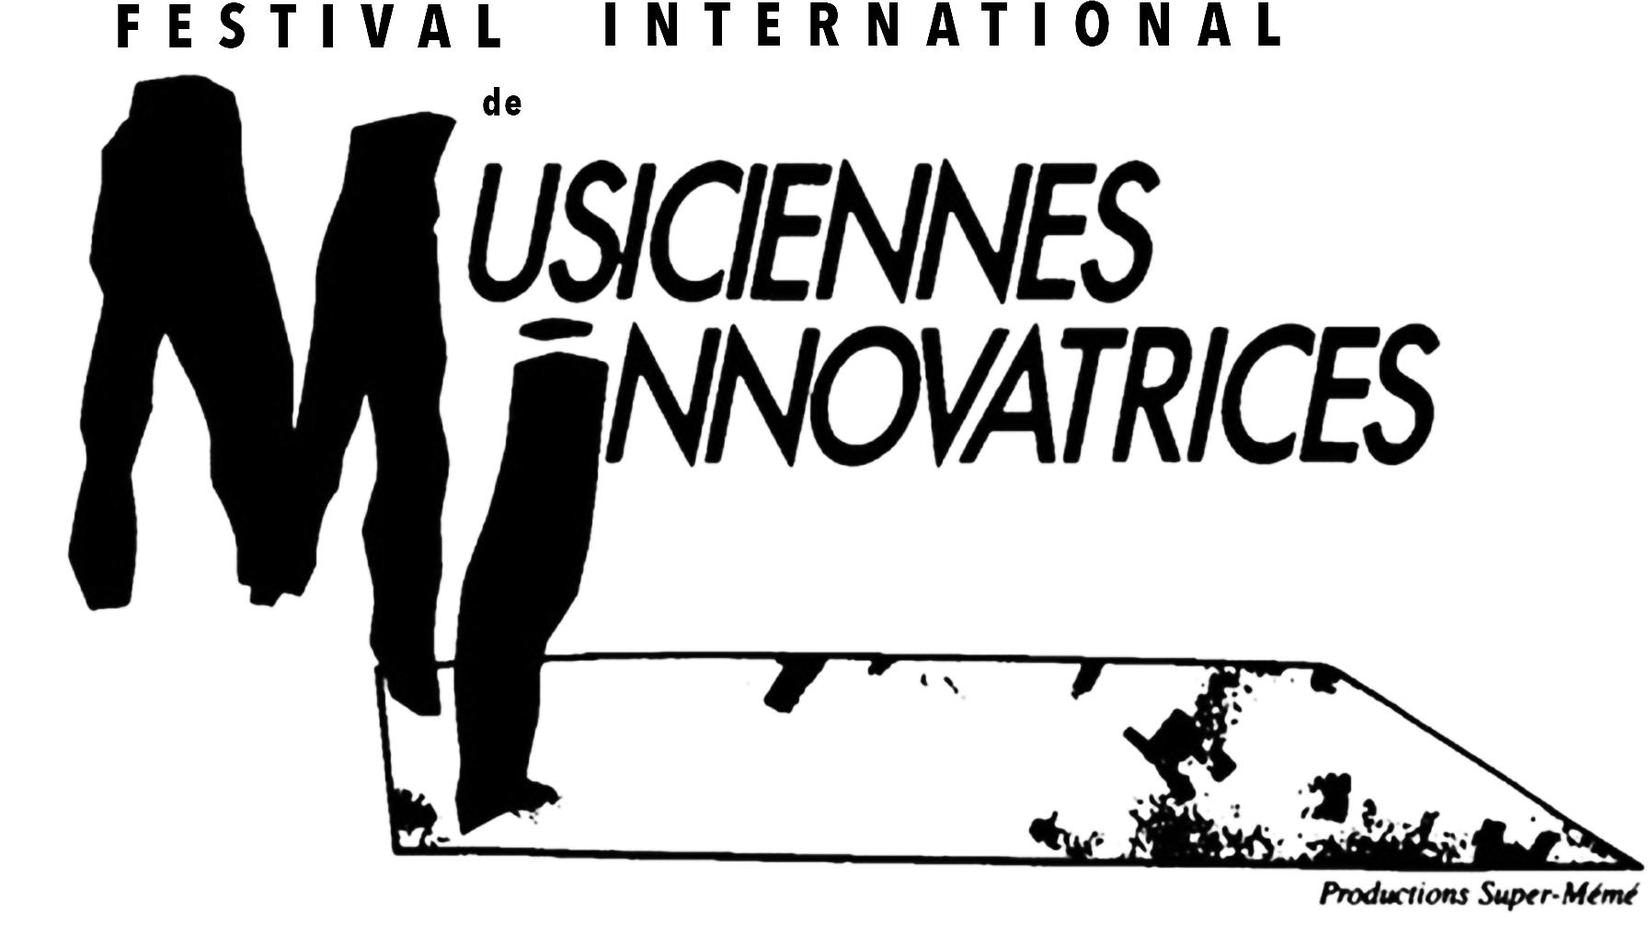 Festival international de musiciennes innovatrices (F.I.M.I.)